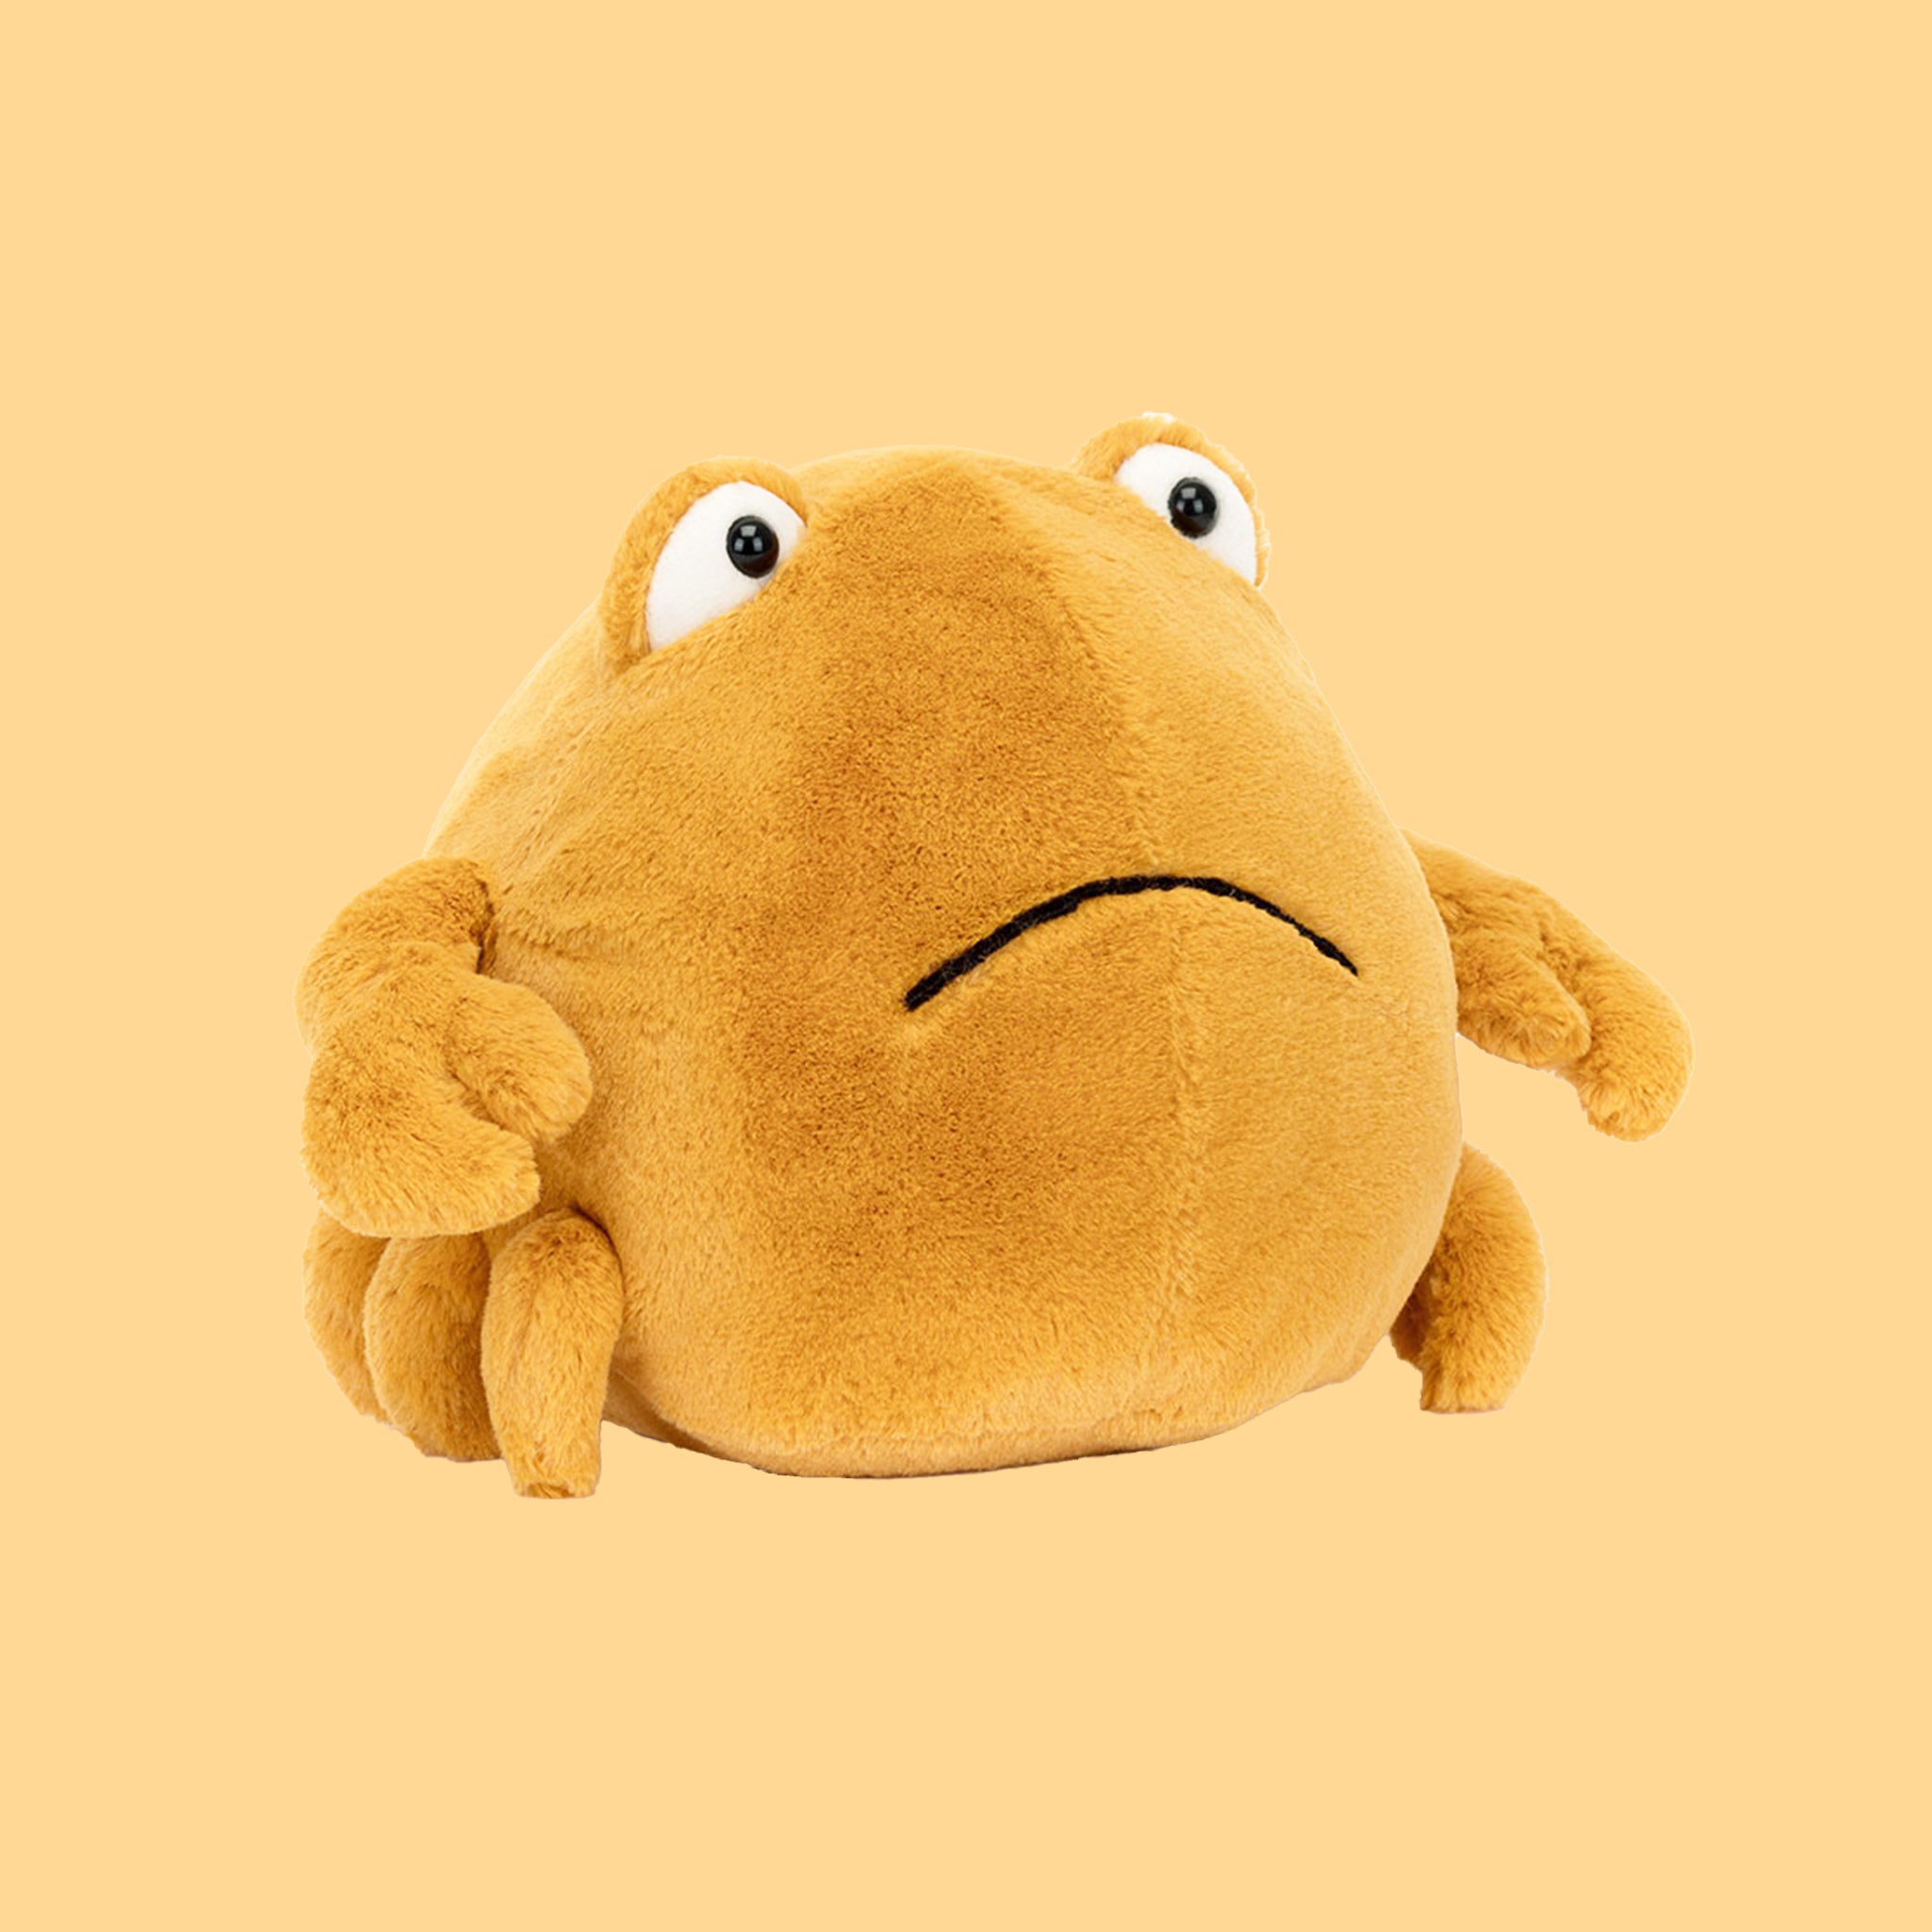 A yellow crab shaped stuffed animal. 